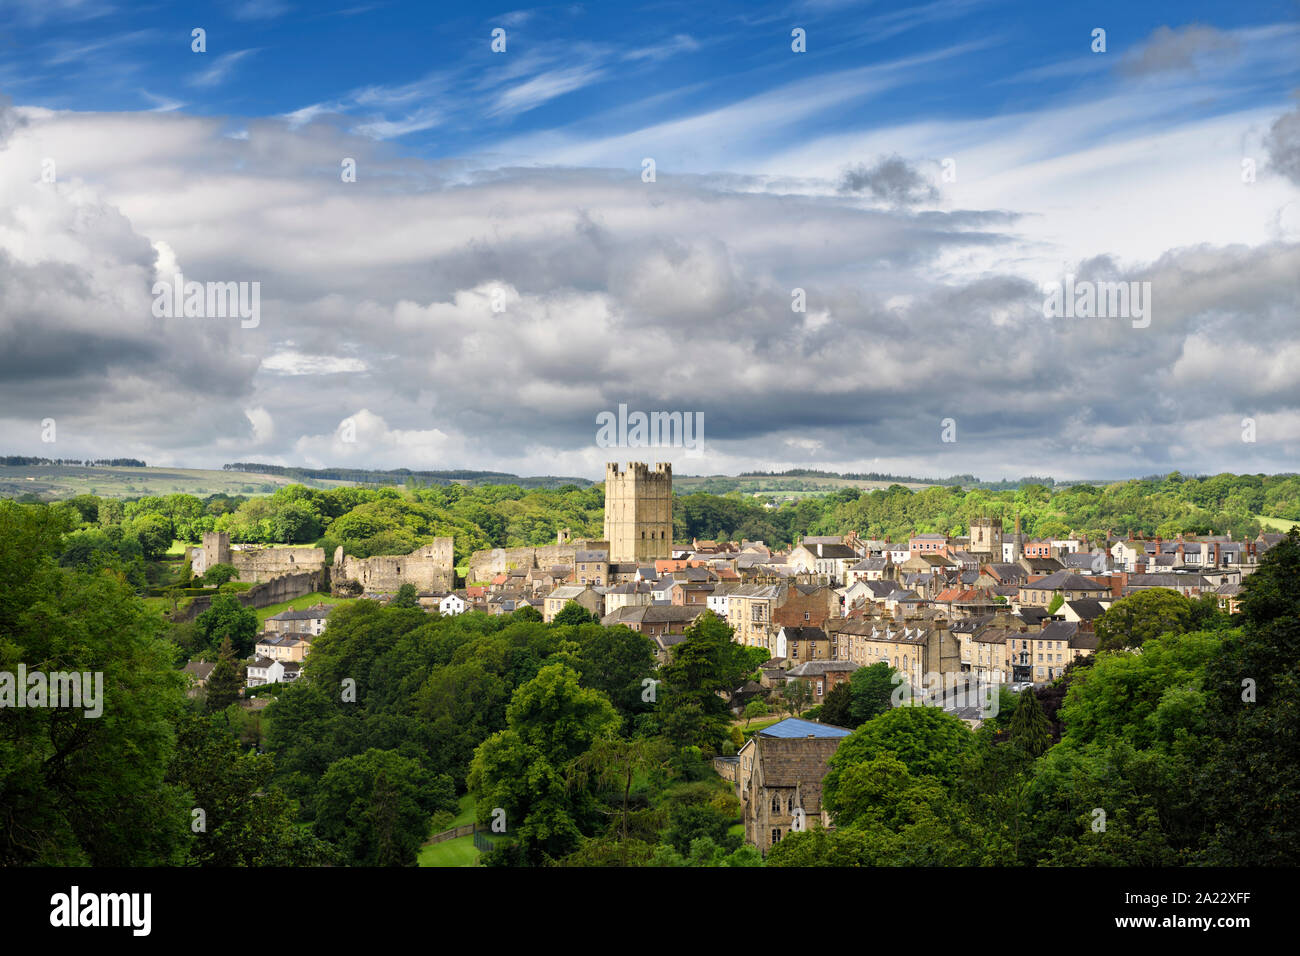 La histórica ciudad de Richmond en North Yorkshire, Inglaterra con Norman Richmond Castle en sol con cielo nublado Foto de stock